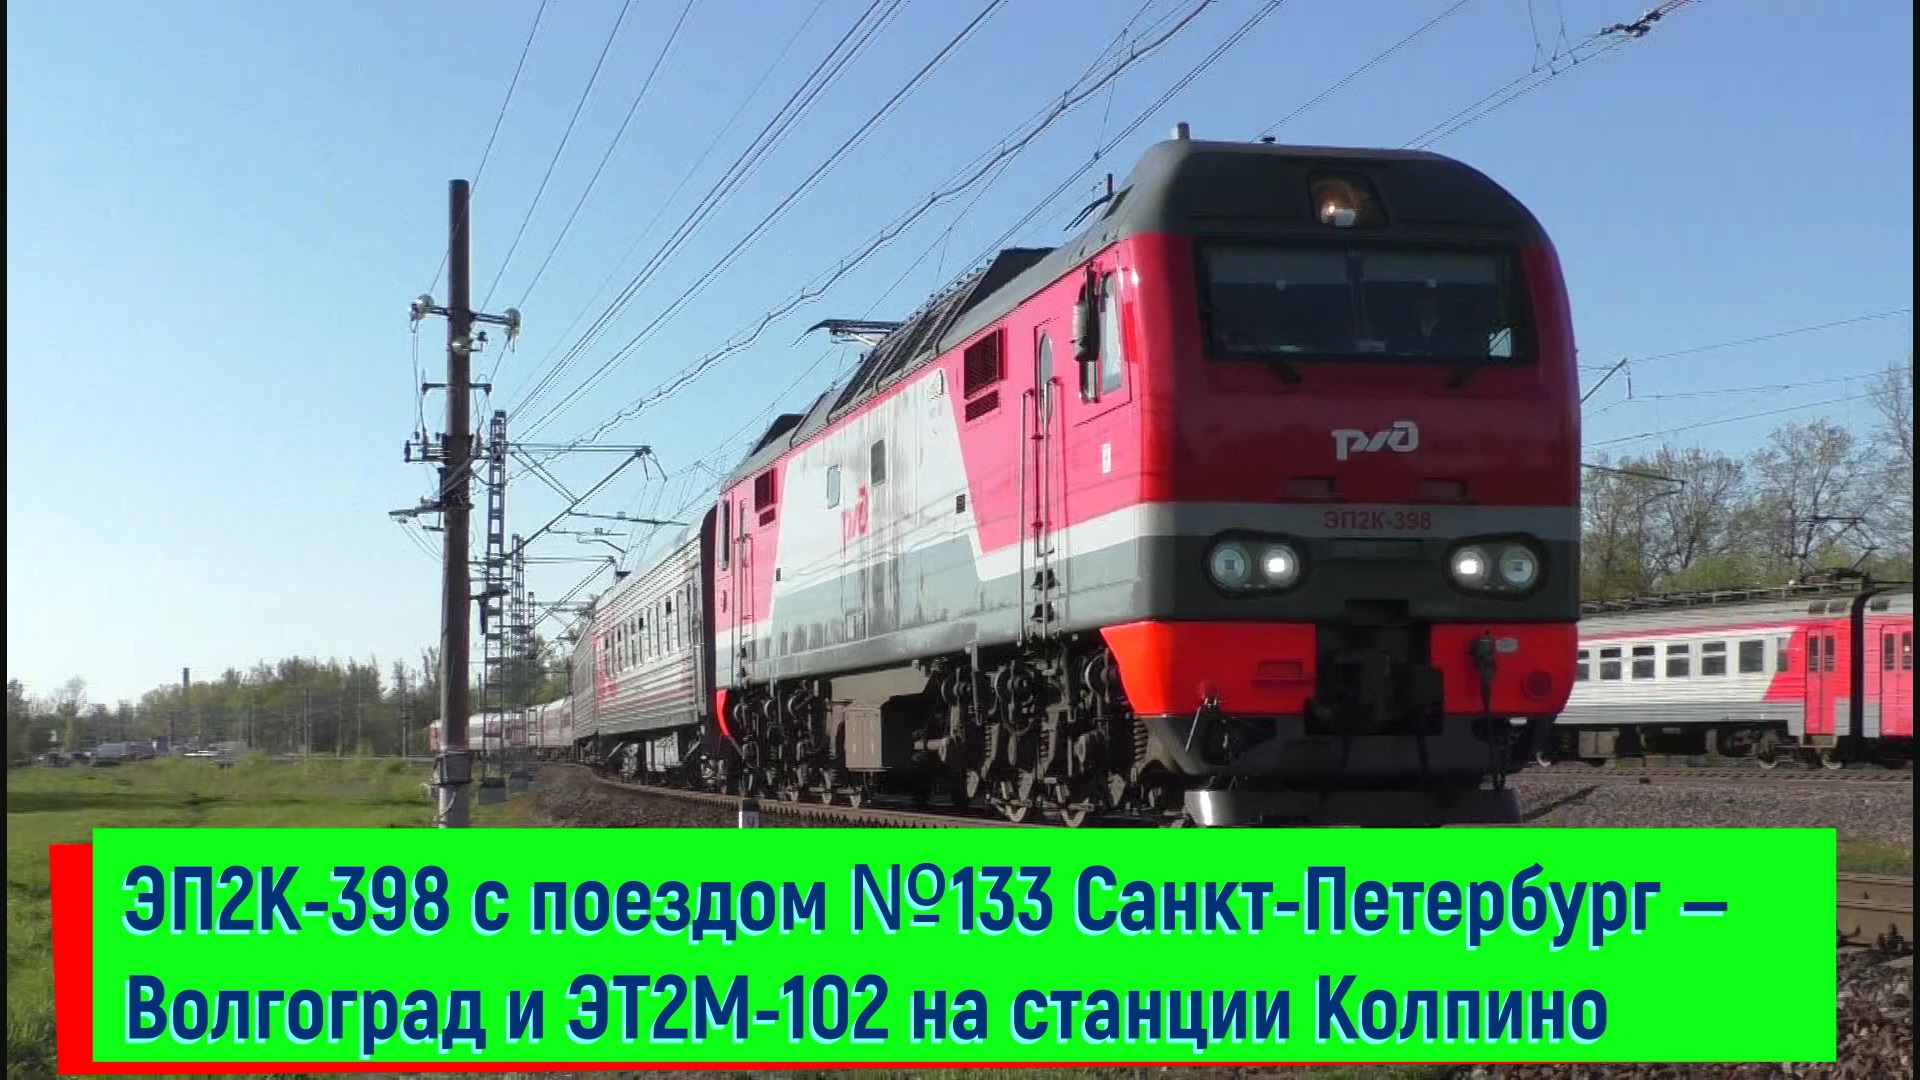 ЭП2К-398 с поездом №133 Санкт-Петербург — Волгоград и ЭТ2М-102 | EP2K-398 and ETM-102